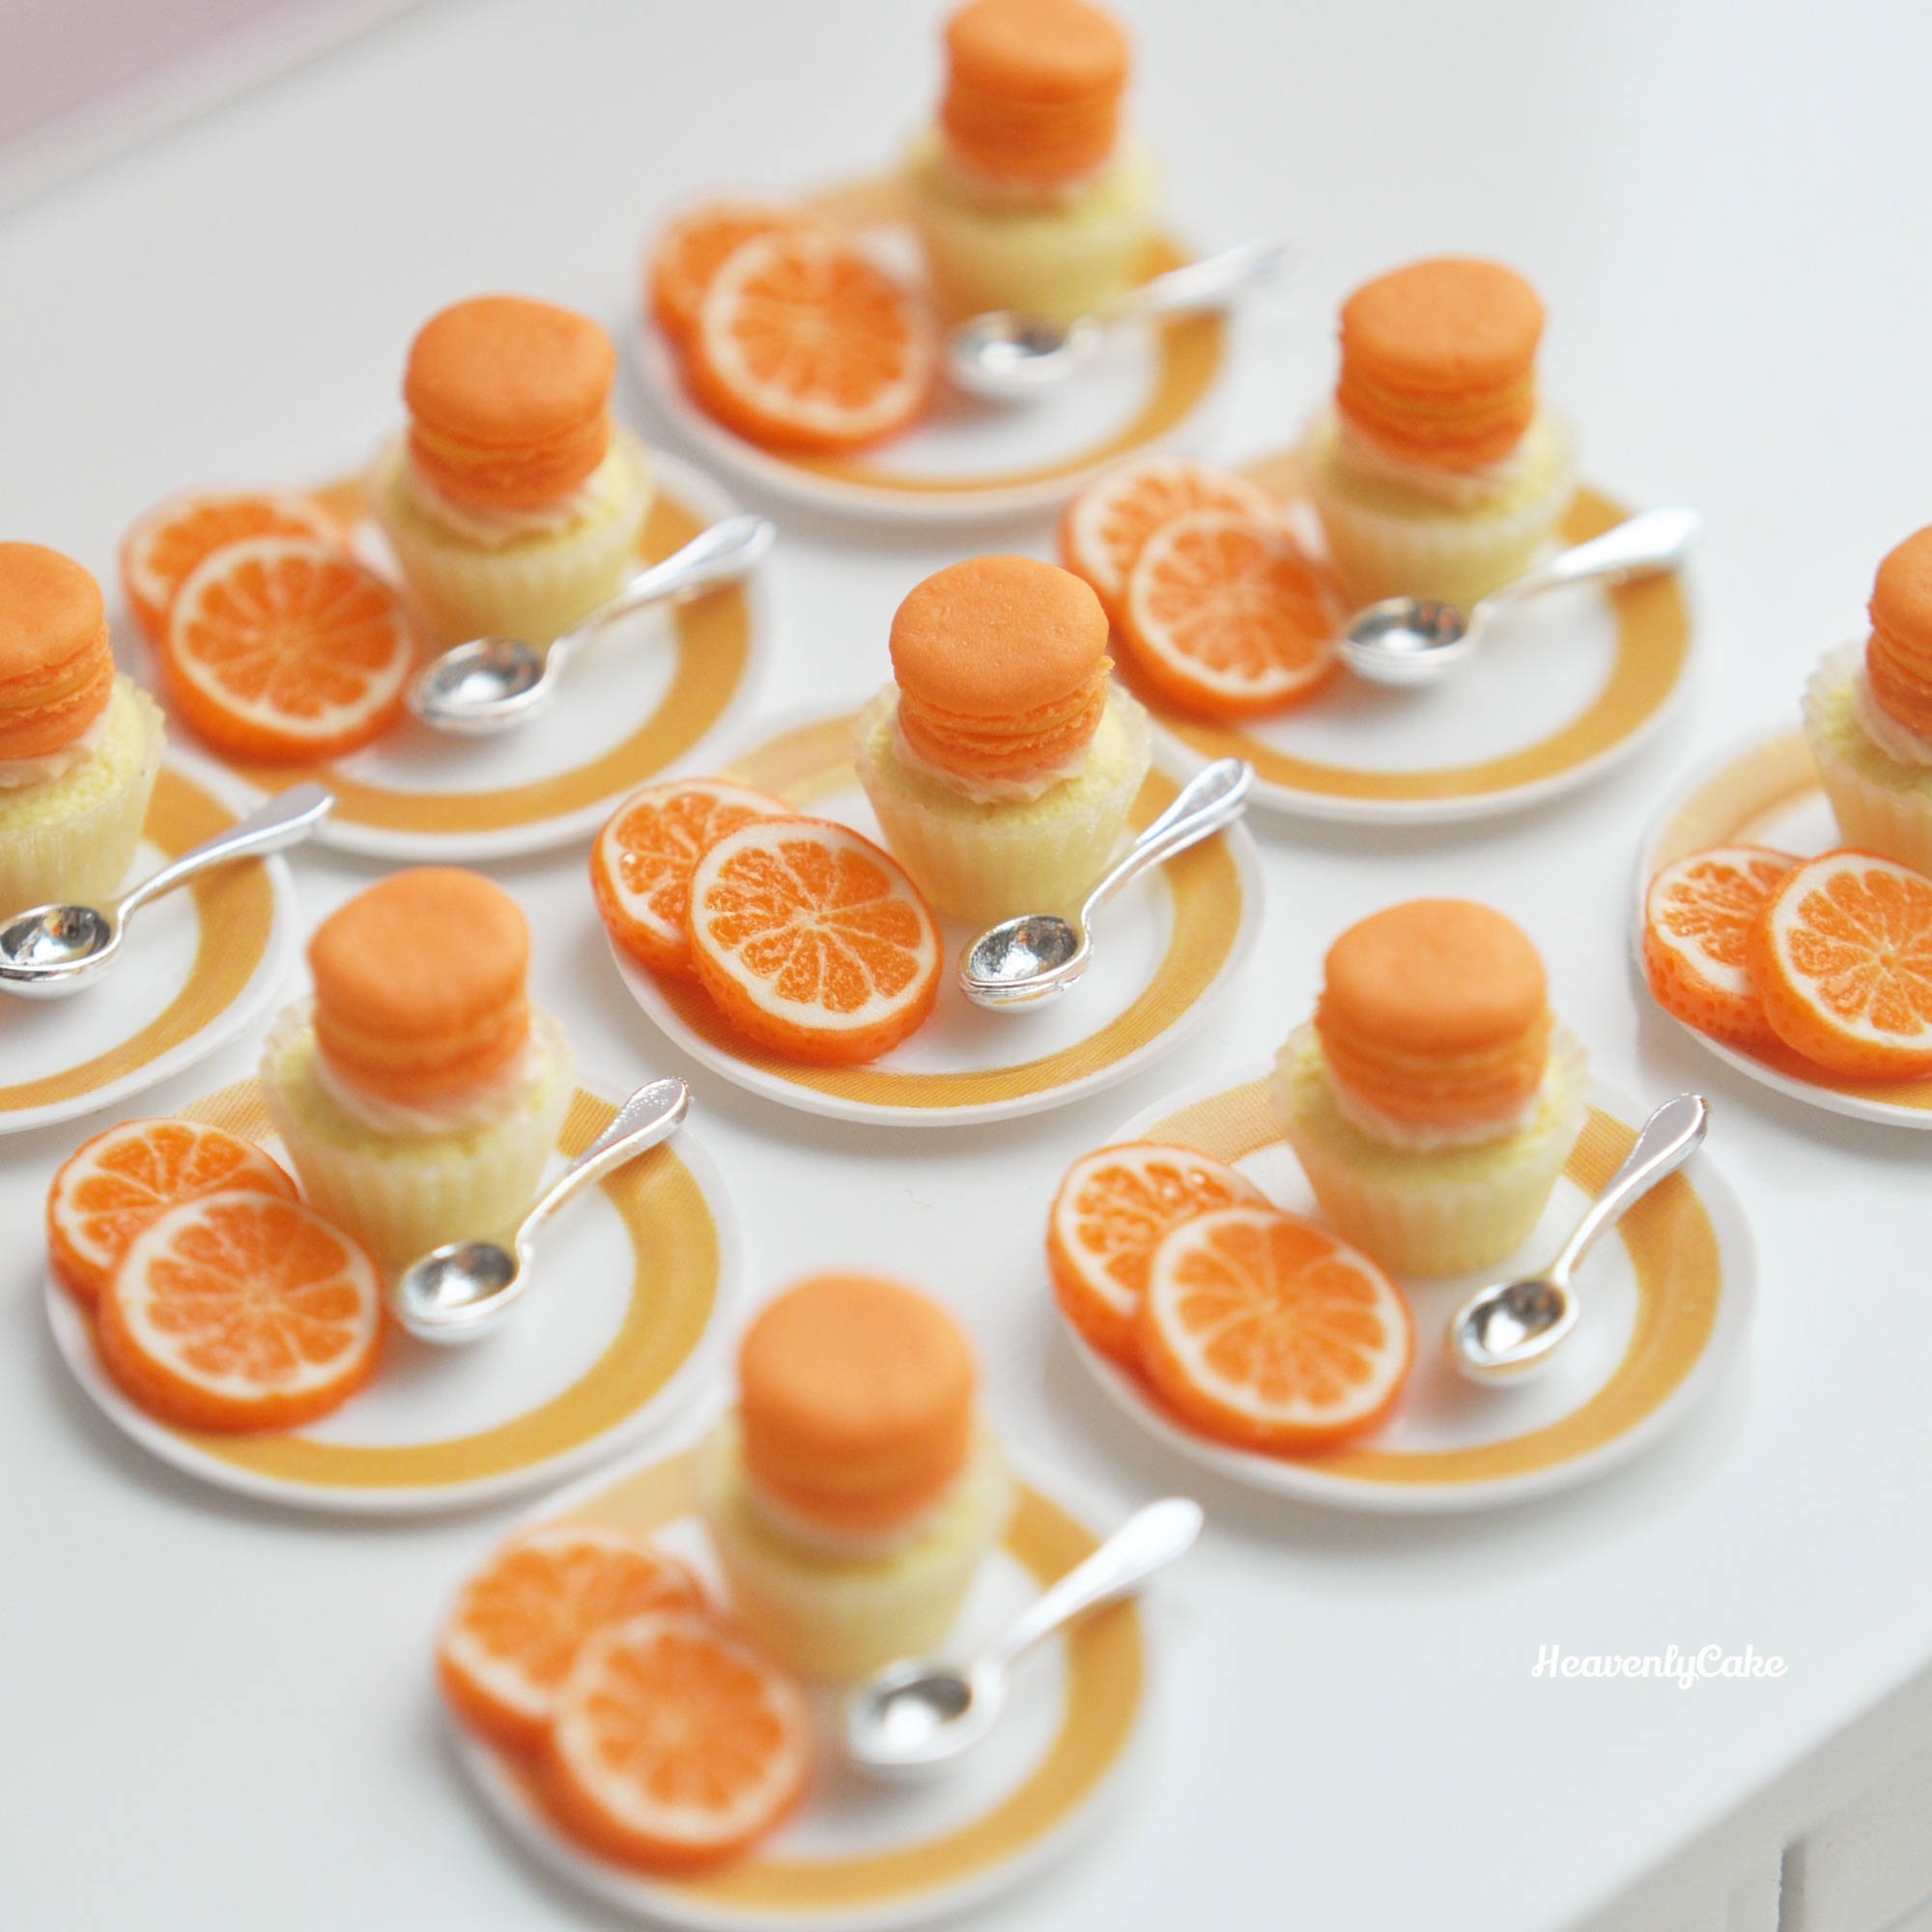 販売用のオレンジパウンドケーキセット完成 | HeavenlyCake miniatures